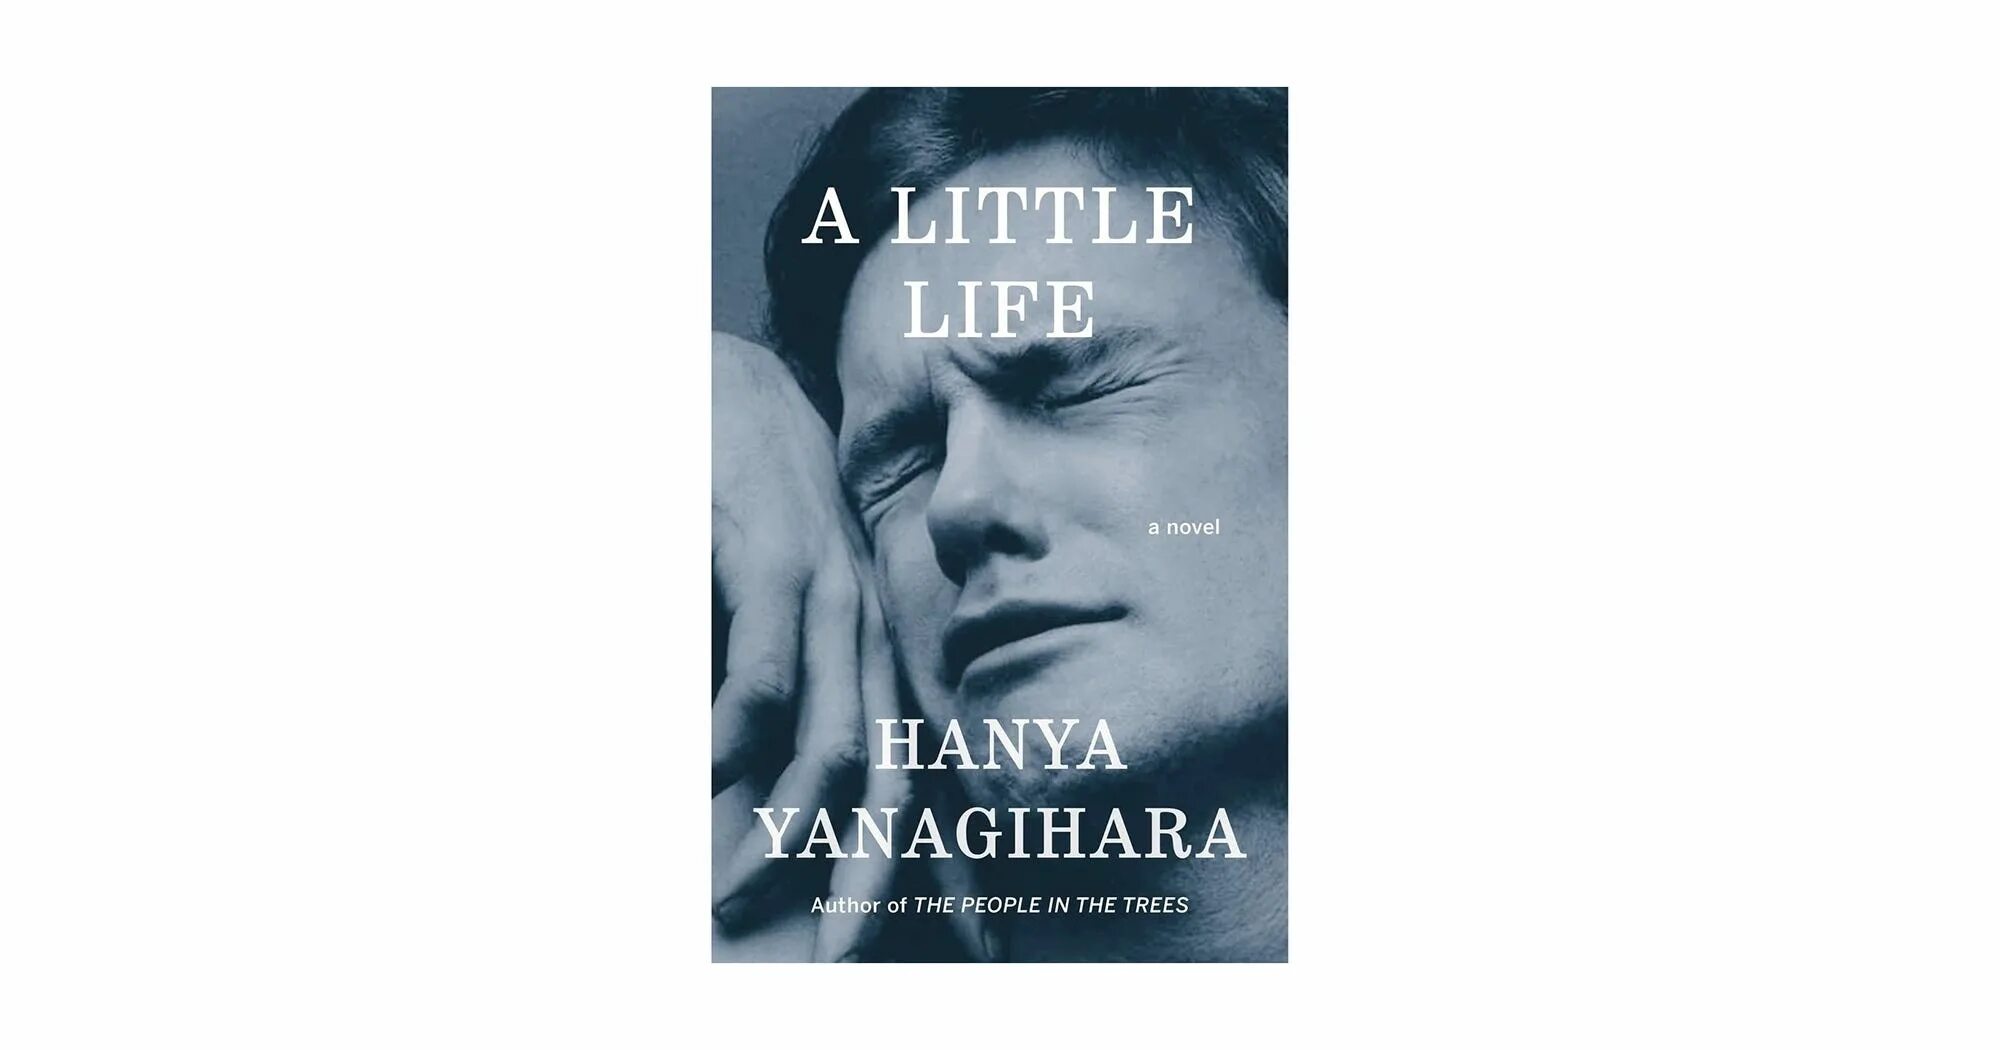 A little life книга. A little Life hanya Yanagihara. The little Life hanya Yanagihara обложка. Обложка книги a little Life.